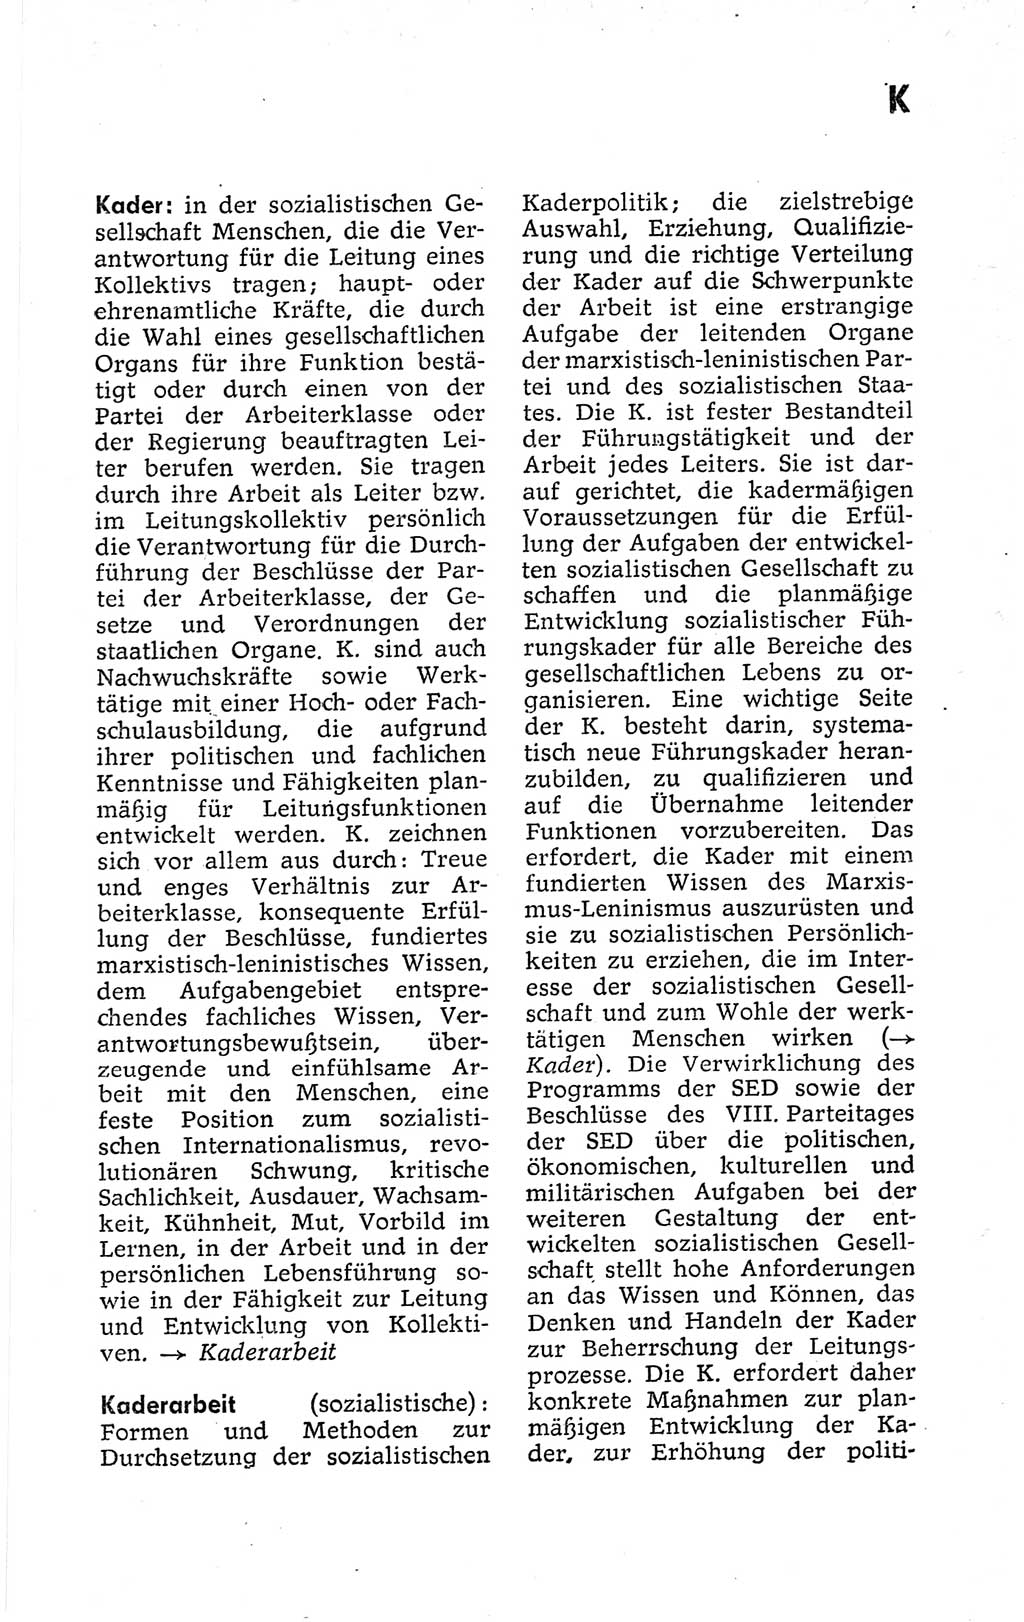 Kleines politisches Wörterbuch [Deutsche Demokratische Republik (DDR)] 1973, Seite 389 (Kl. pol. Wb. DDR 1973, S. 389)